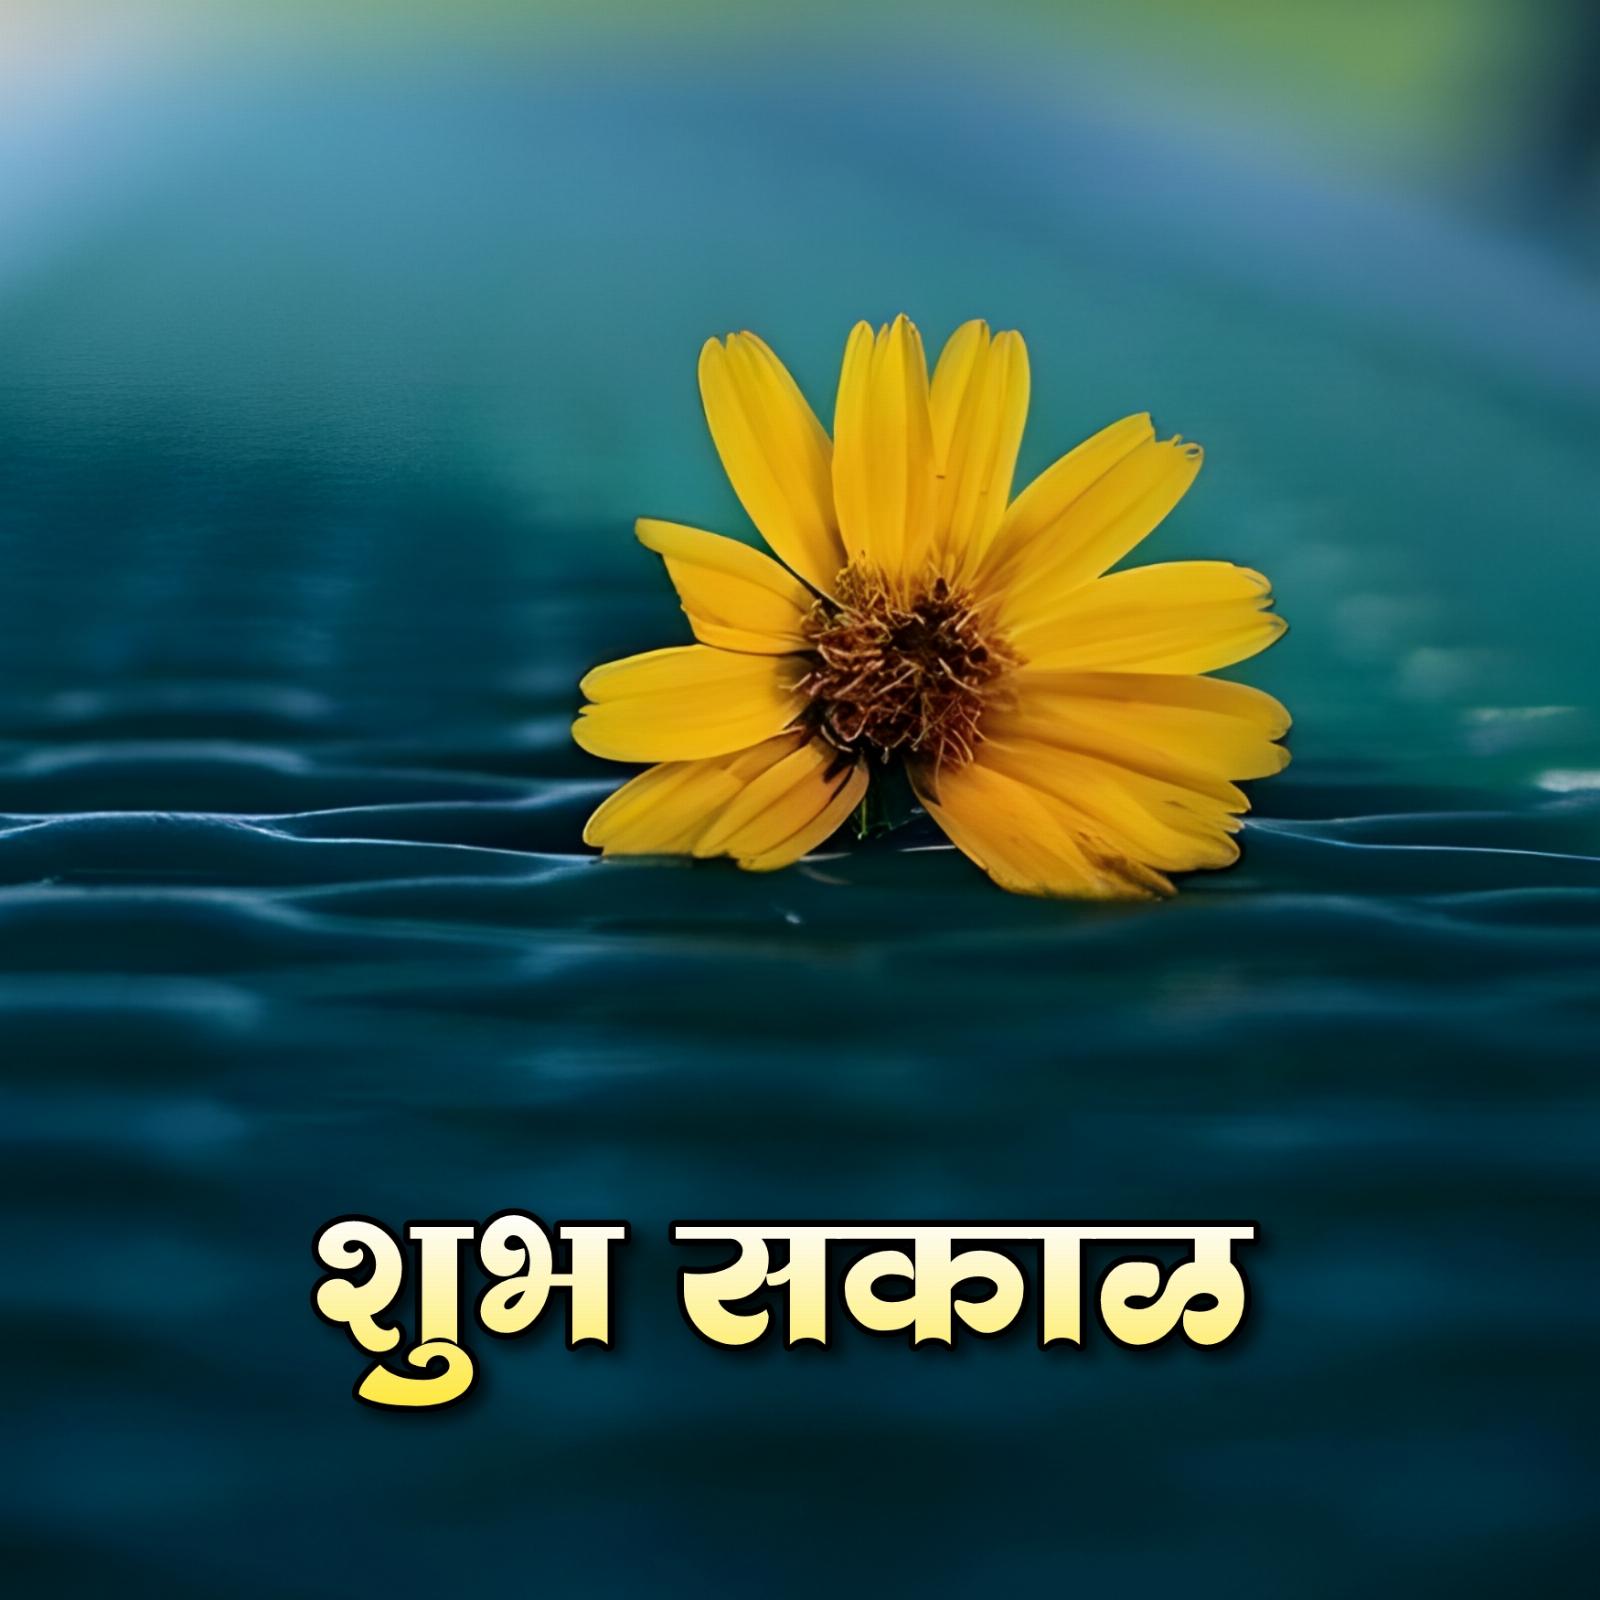 Shubh Sakal Yellow Flower Images